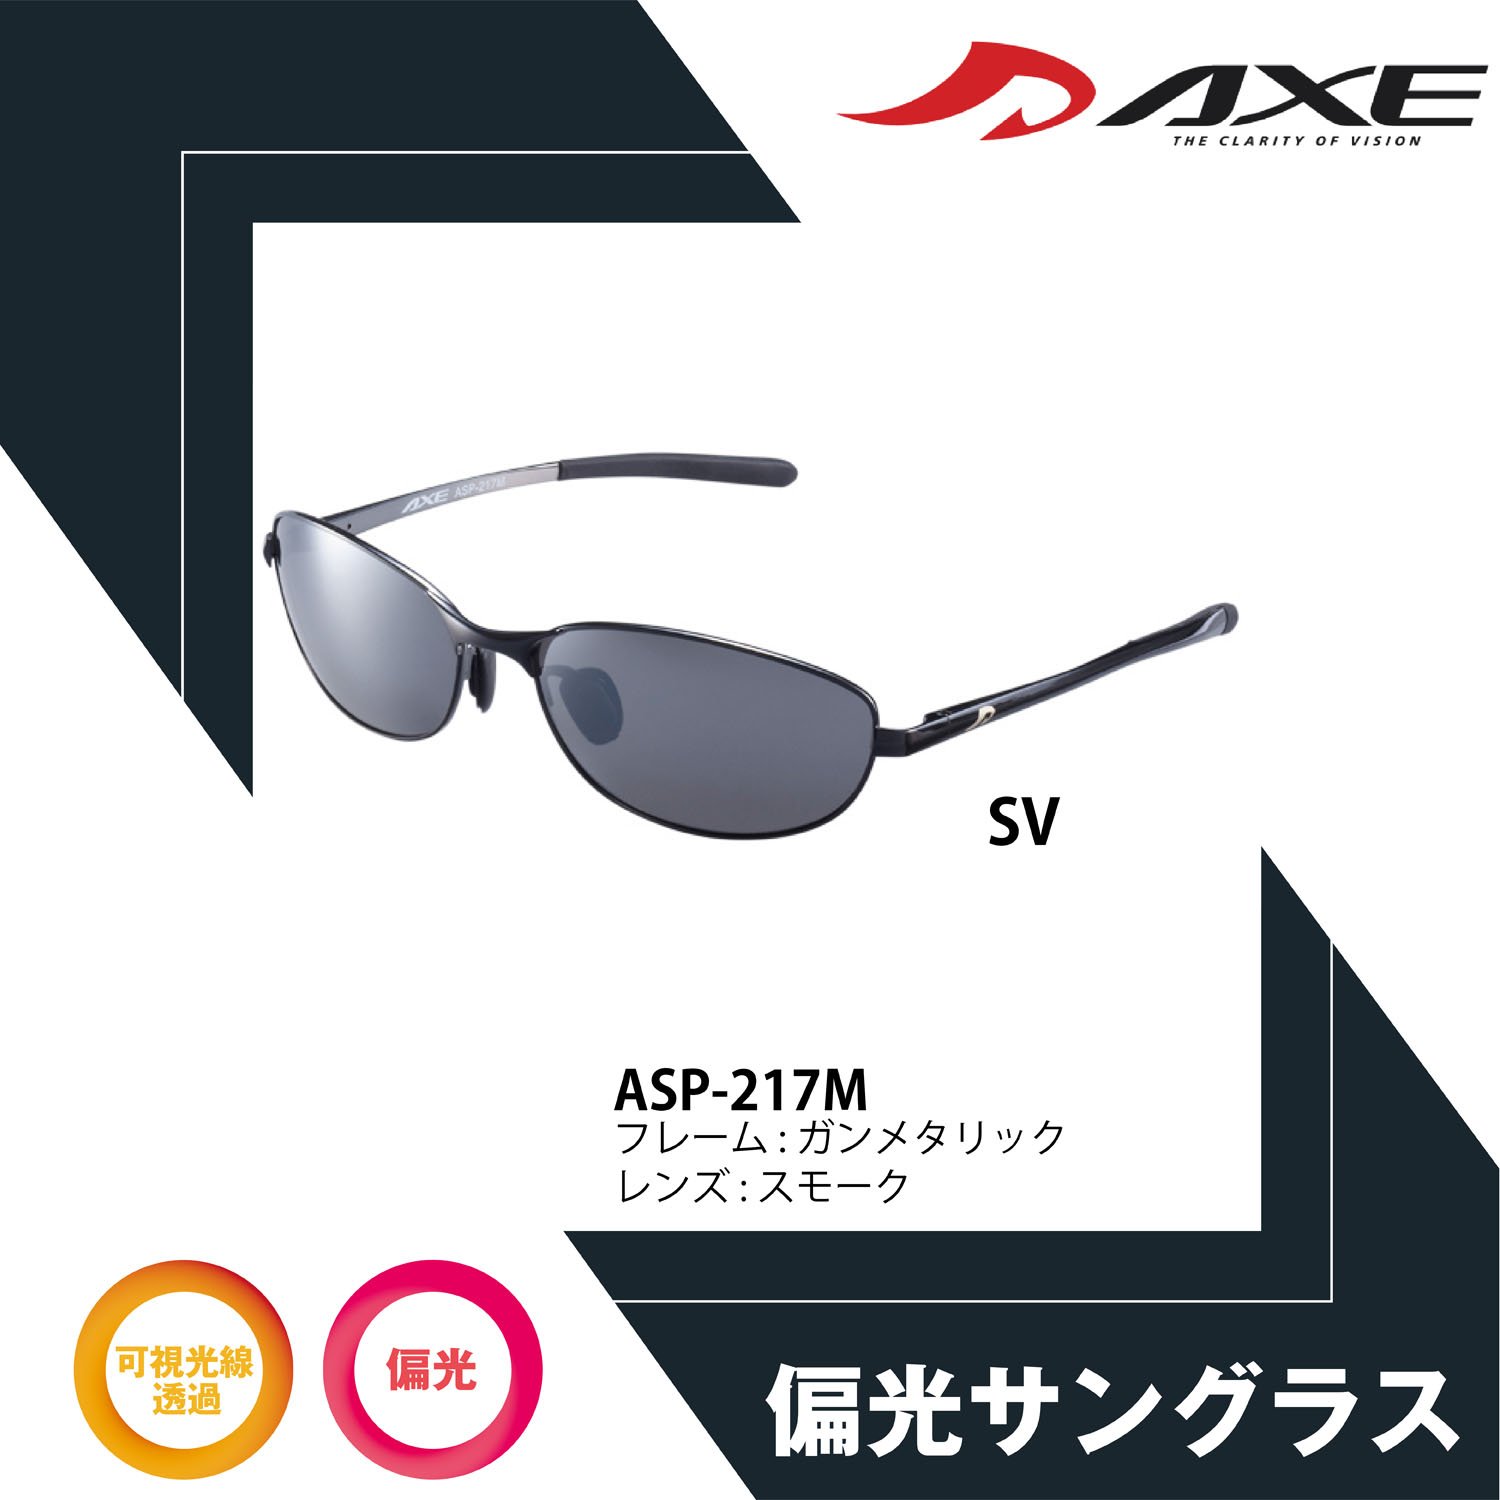 AXE アックス 偏光サングラス サングラス 偏光 ASP-217M SV UV400カット UVカット 紫外線対策 スポーツ 偏光グラス 釣り フィッシング ドライブ